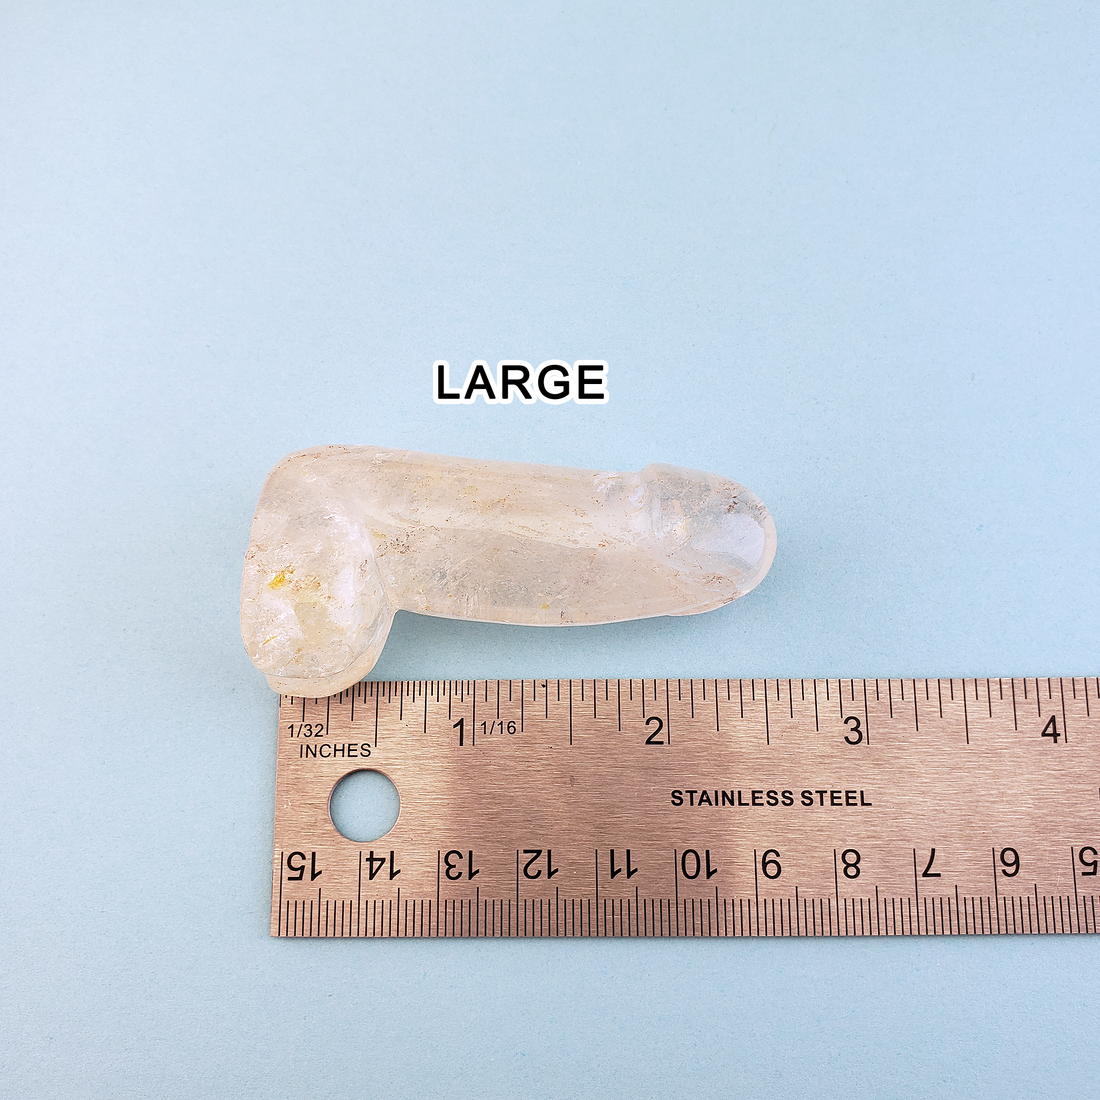 Big Dick Energy - Quartz Crystal Penis Power Totem Gift Box - Large Measurement